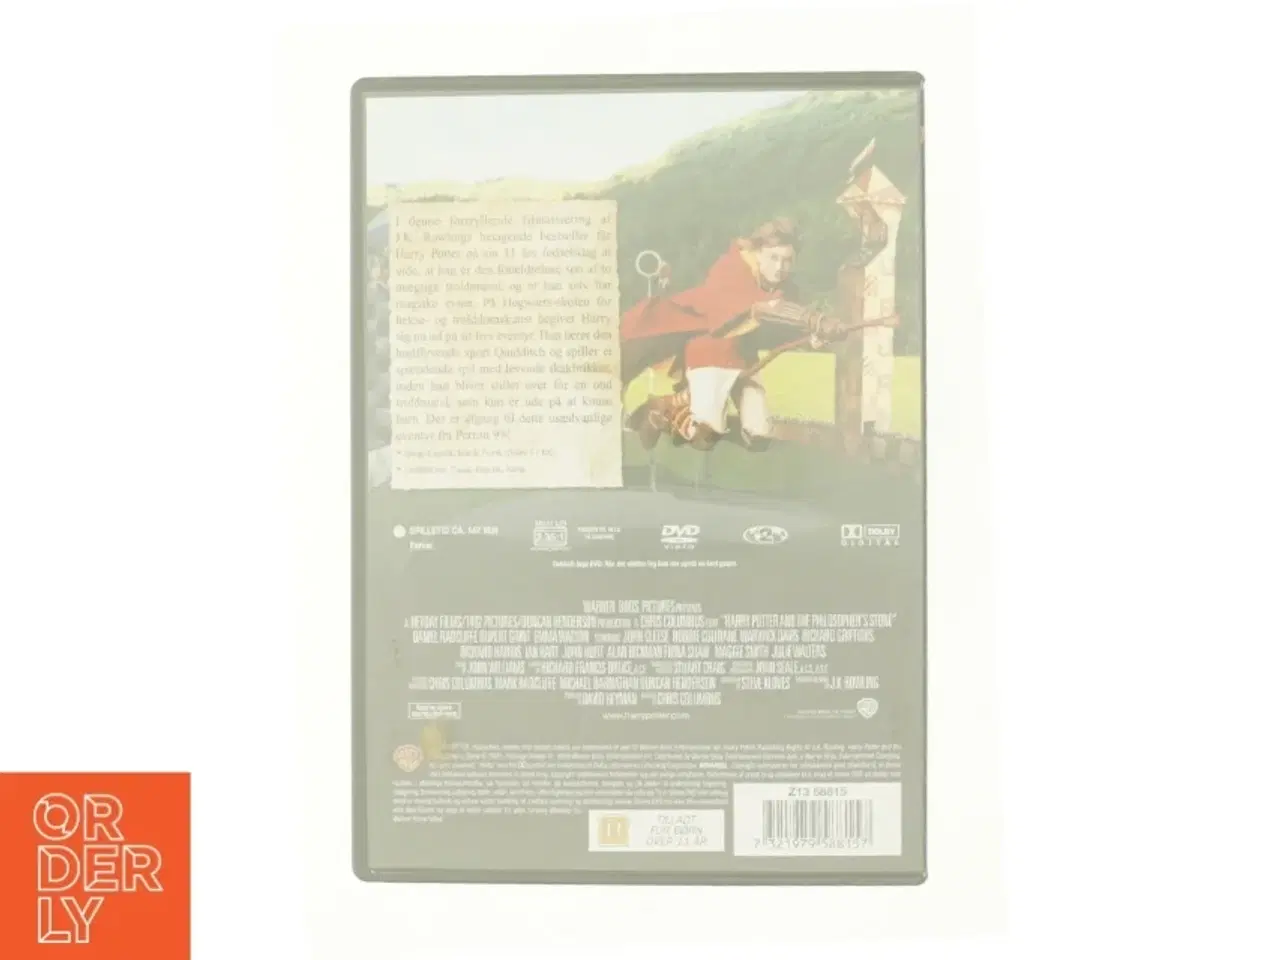 Billede 2 - Harry Potter Og De Vises Sten fra DVD